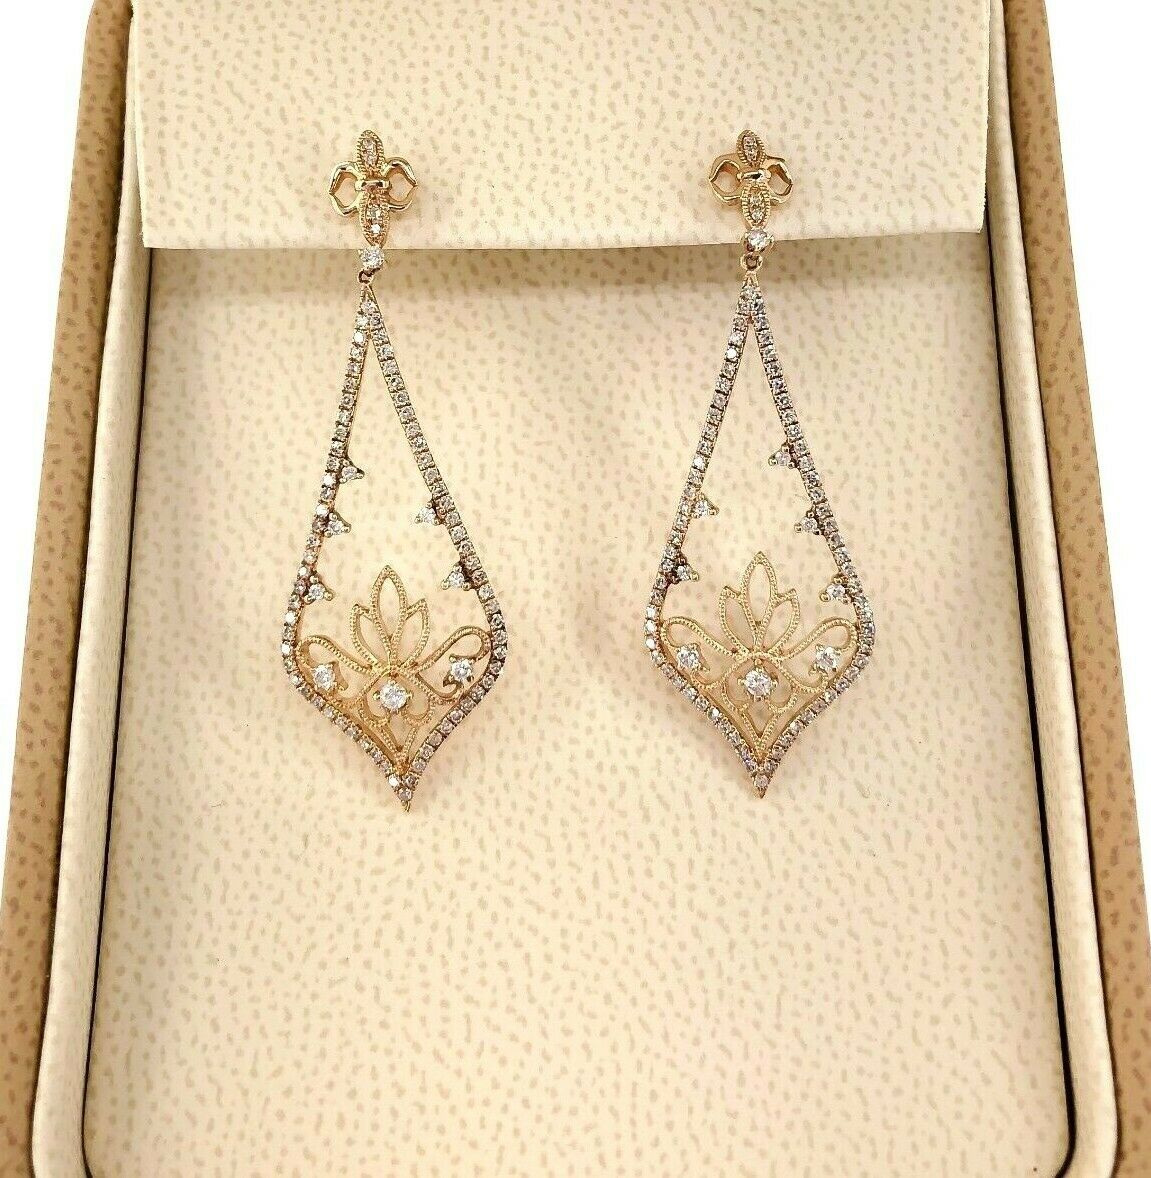 0.55 Carat t.w. Diamond Motif Dangle Earrings 18 Karat Rose Gold 1.75 Inch Drop